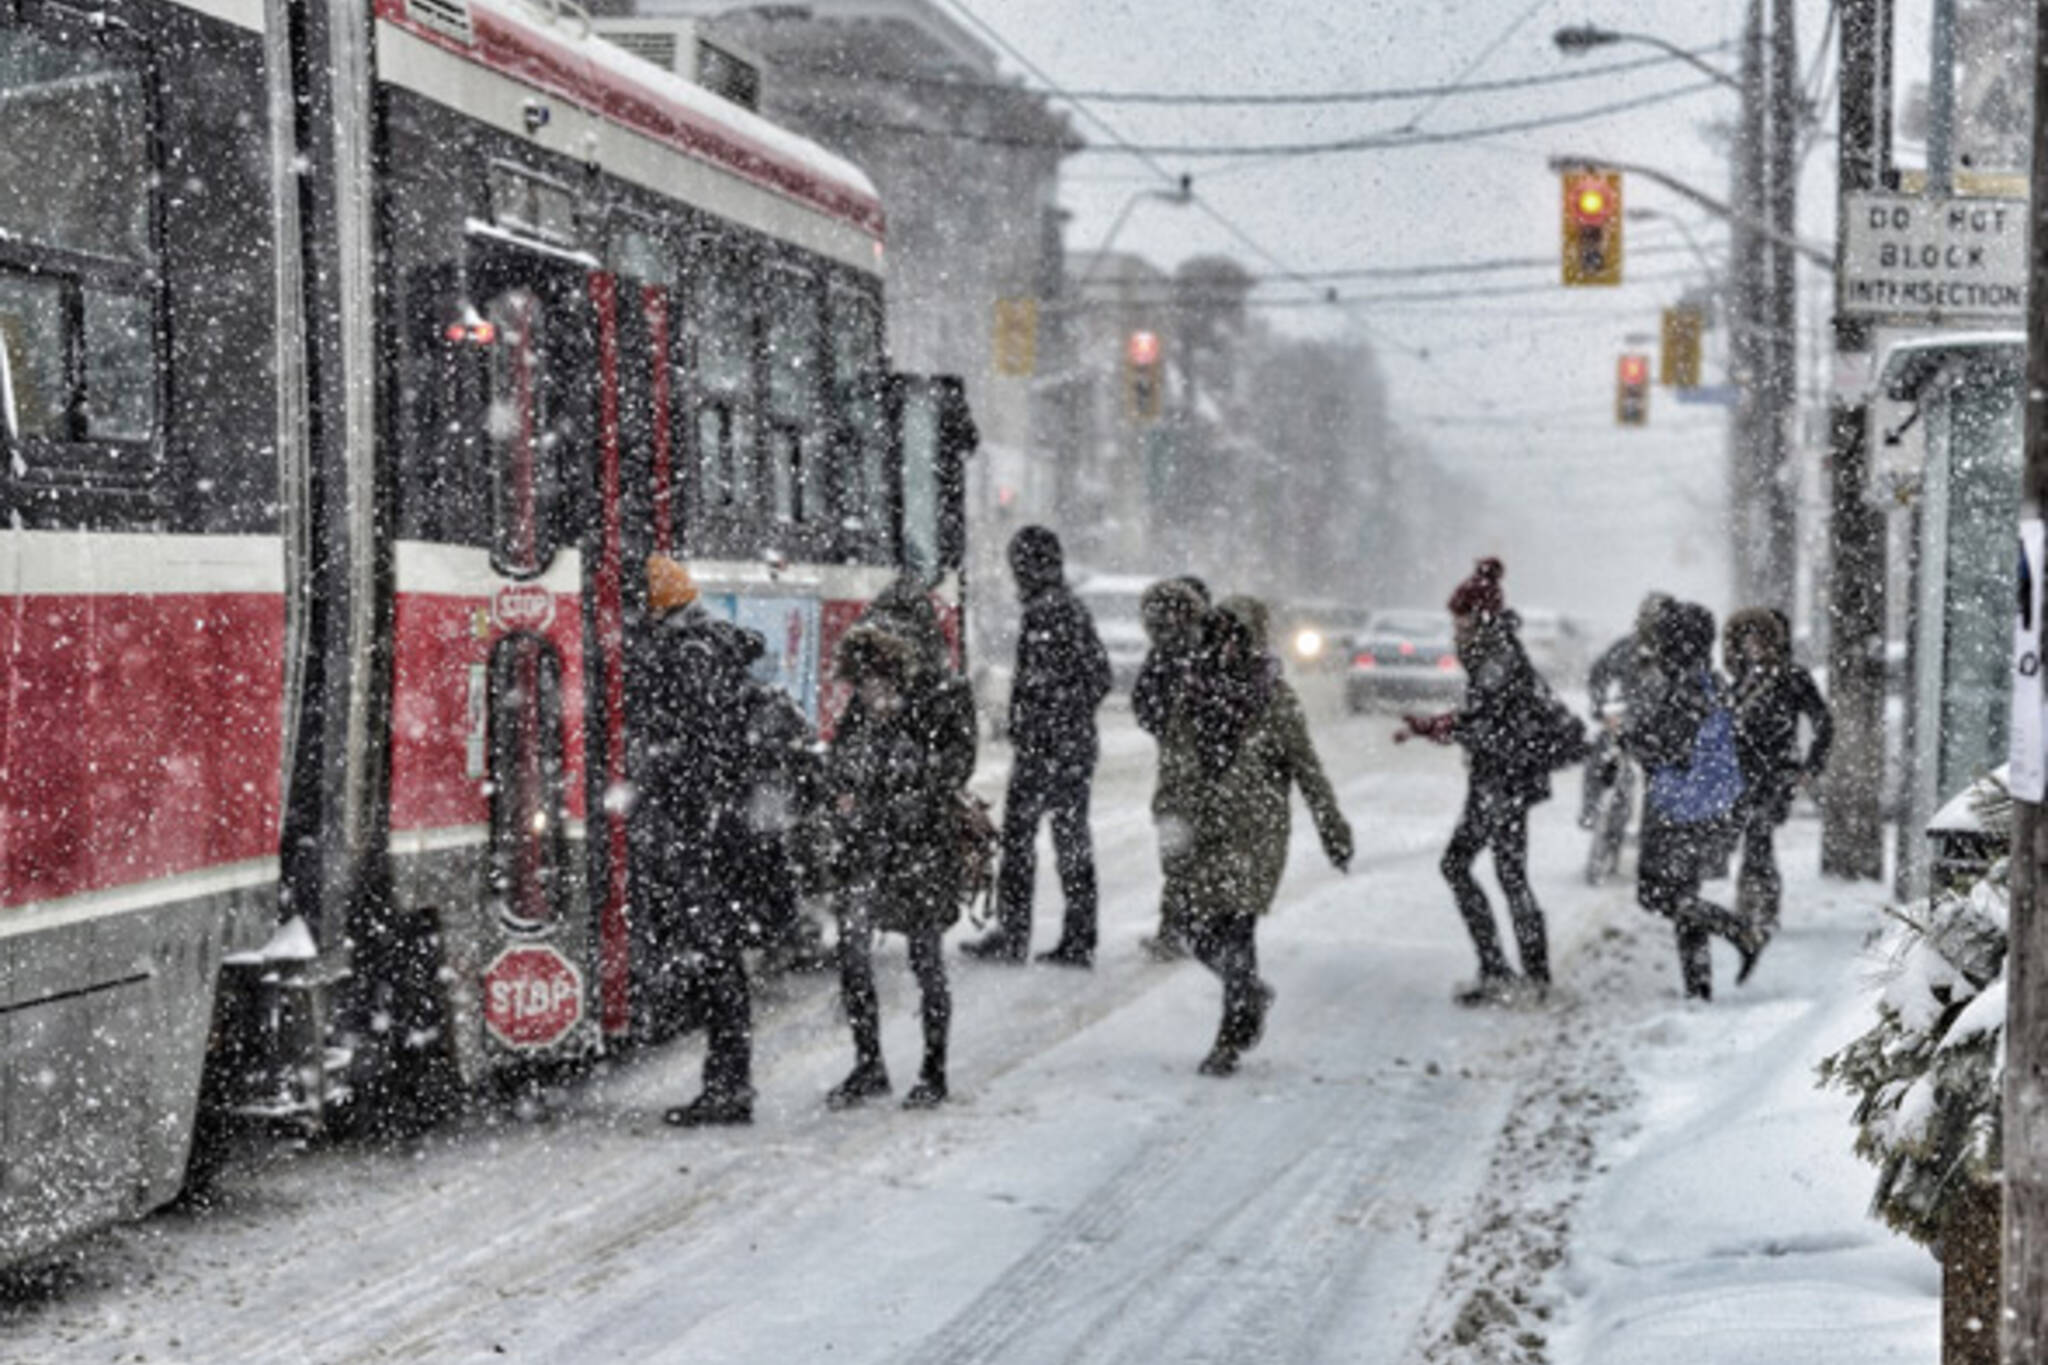 Toronto could get a big snow storm tomorrow